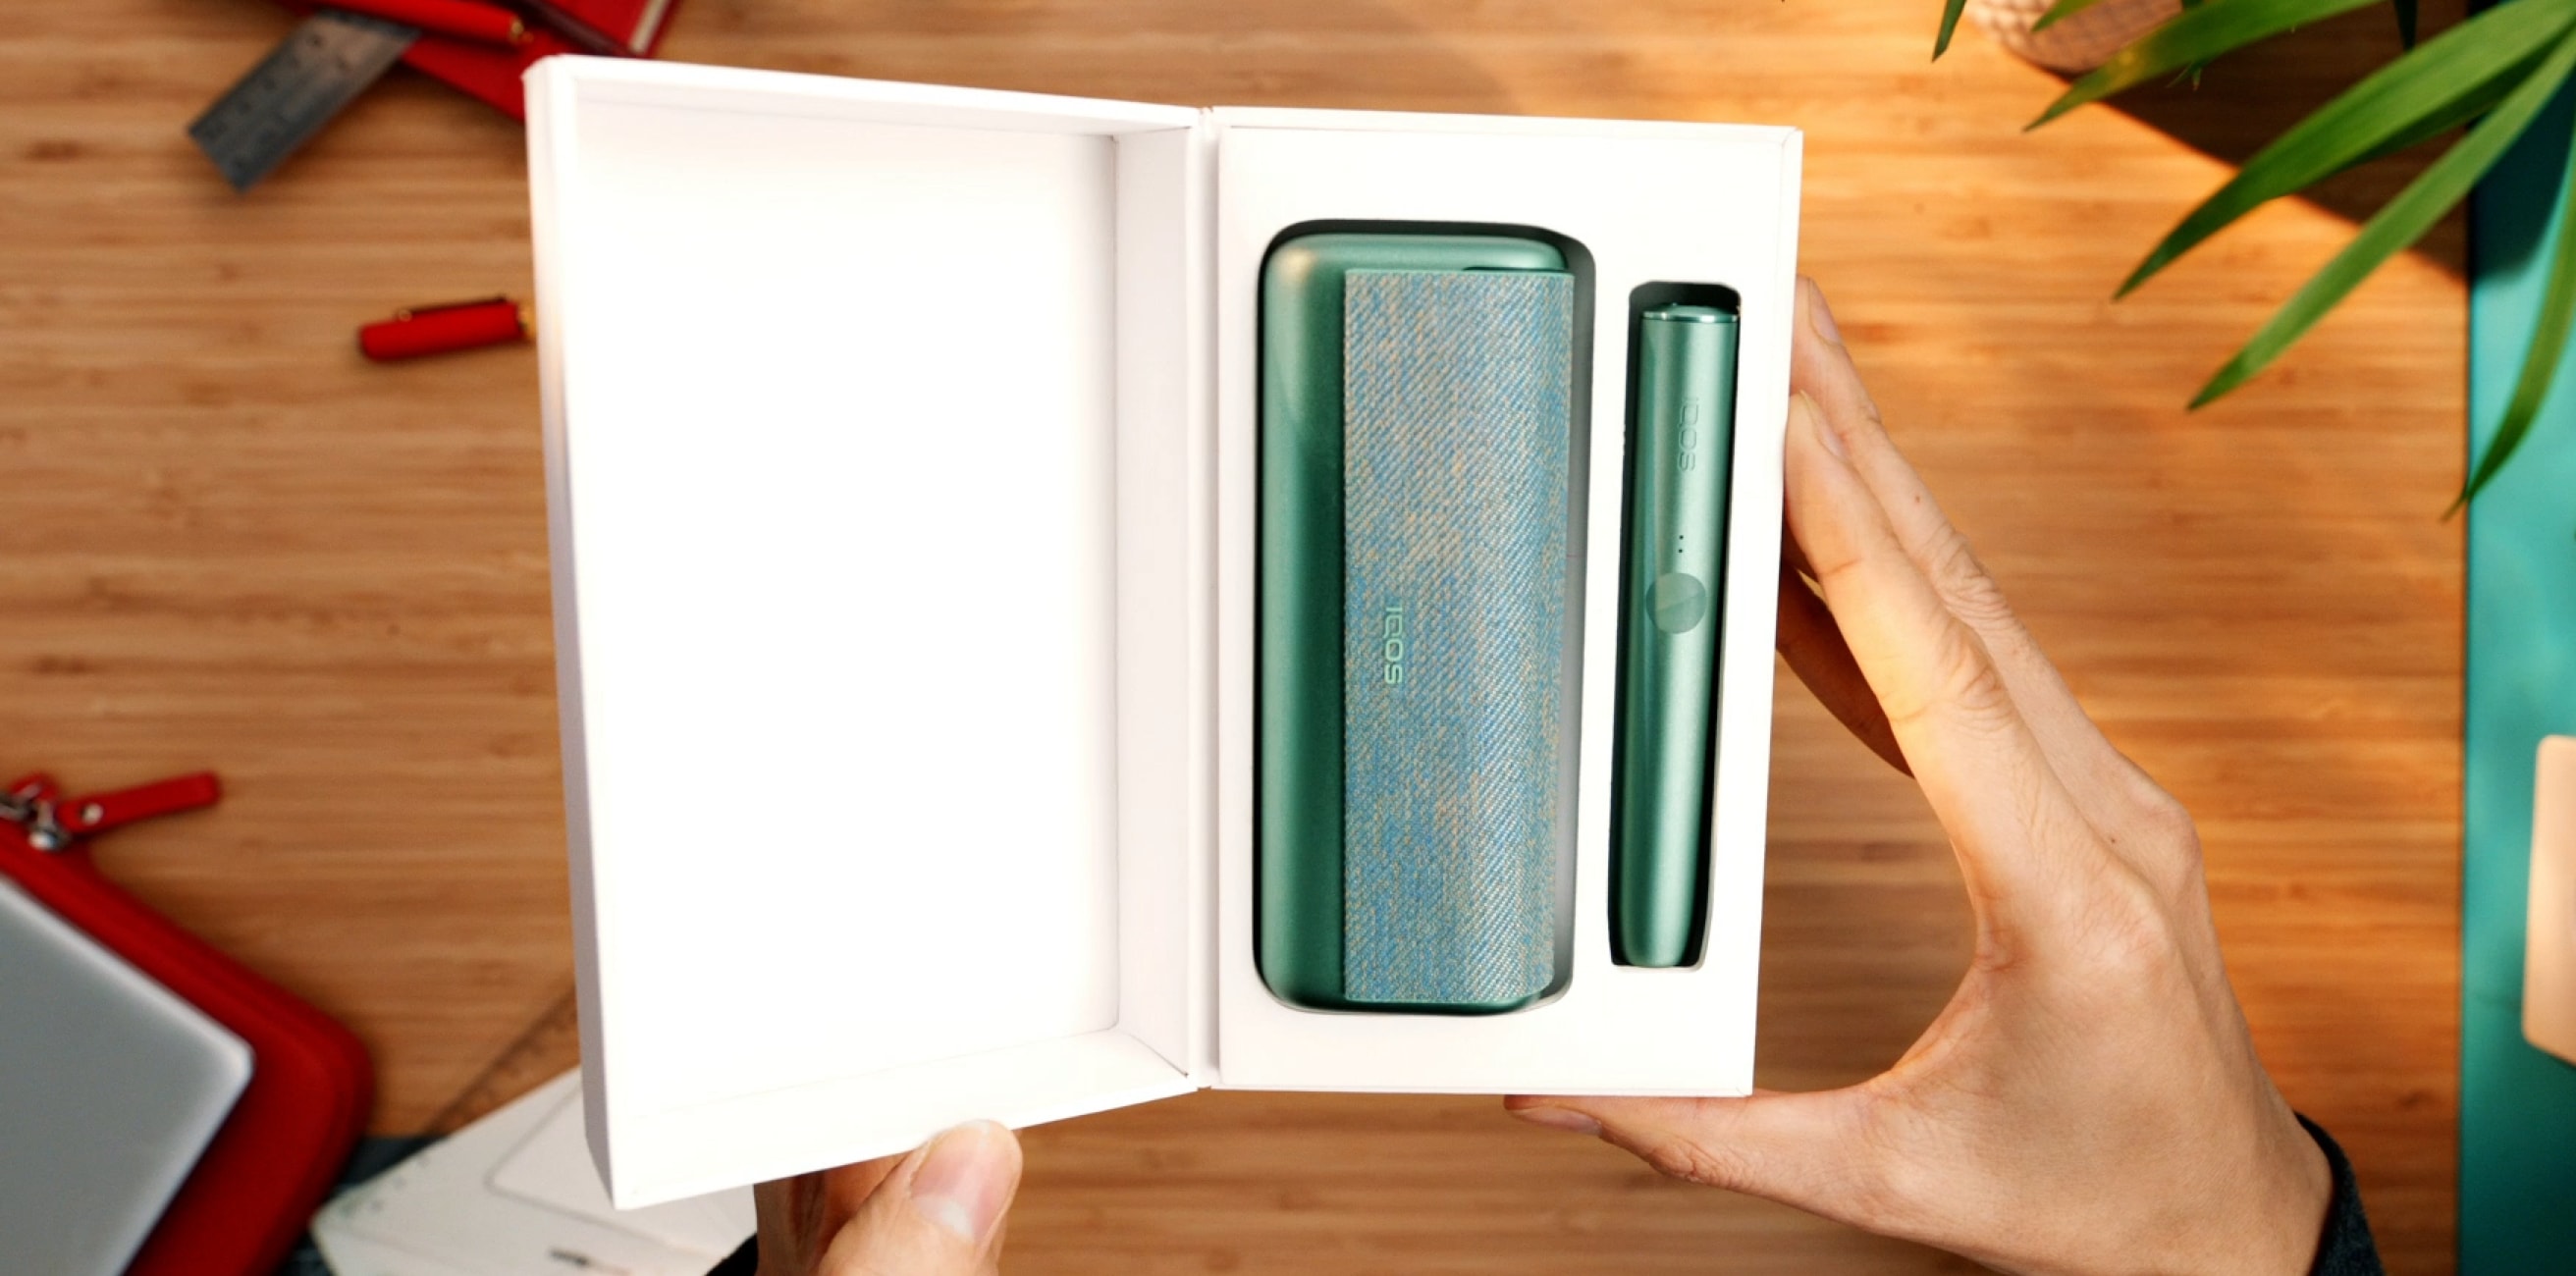 Βάση και φορτιστής τσέπης IQOS ILUMA PRIME σε χρώμα Jade Green μέσα σε ένα κουτί.